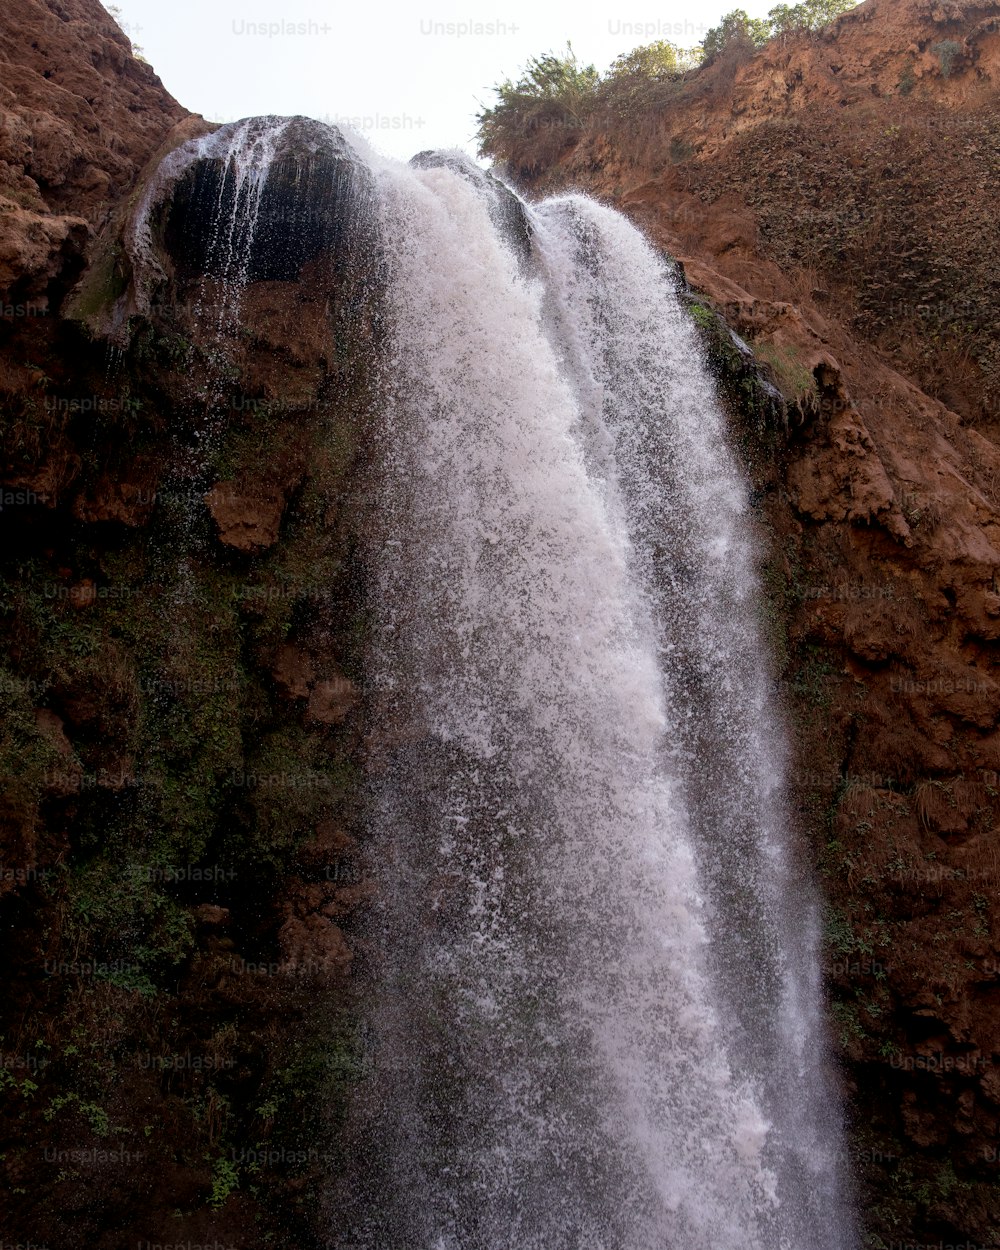 Una cascada muy alta con mucha agua saliendo de ella